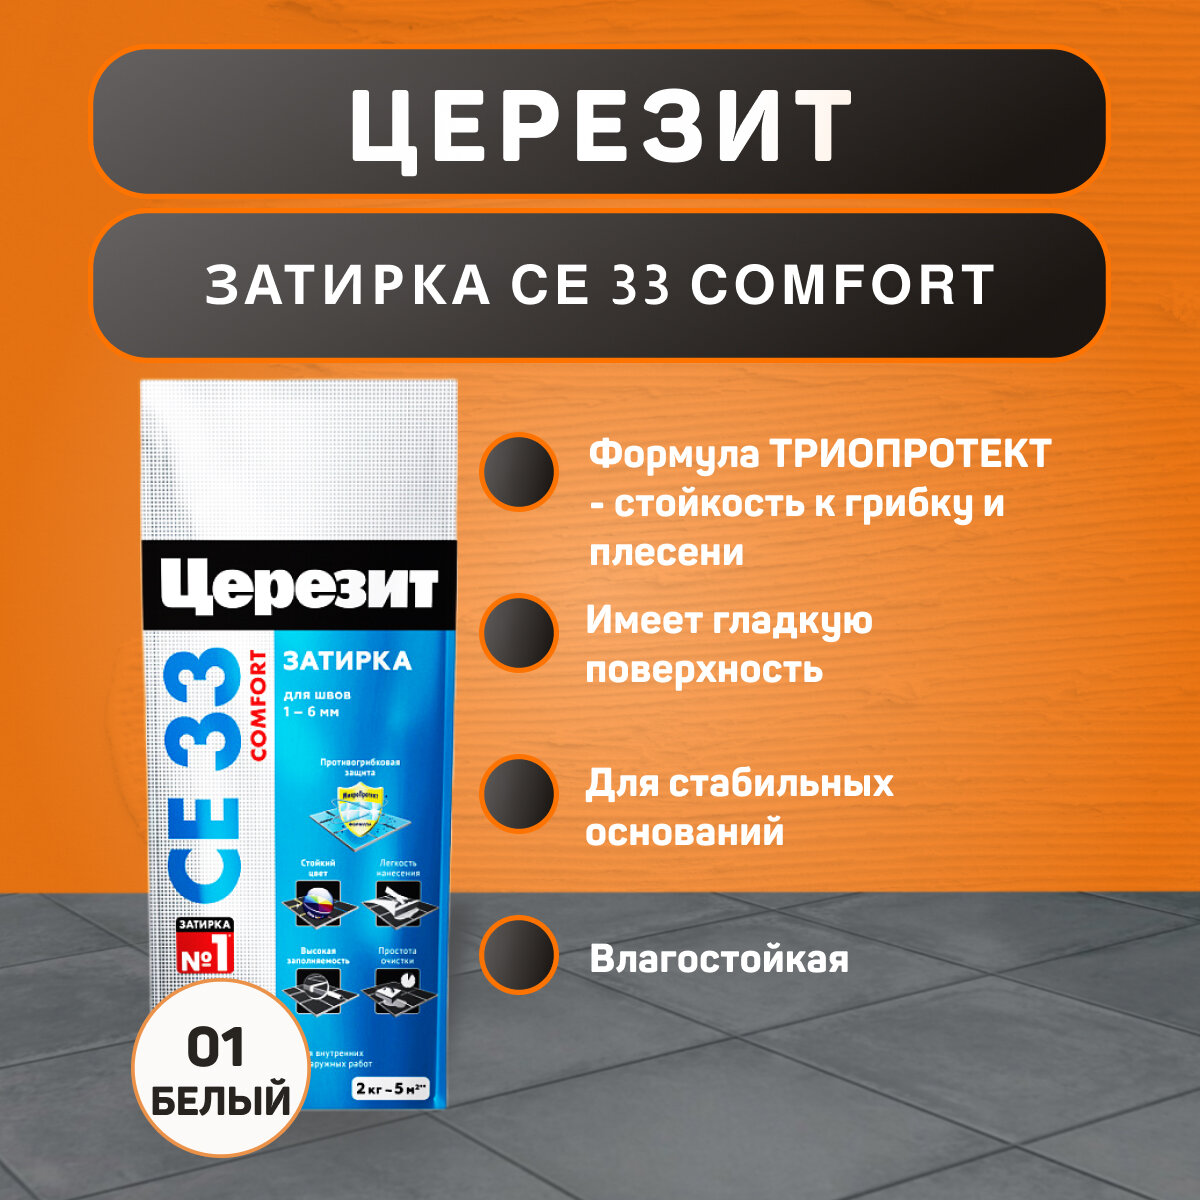 Затирка Ceresit CE 33 Comfort №01 белая 2 кг